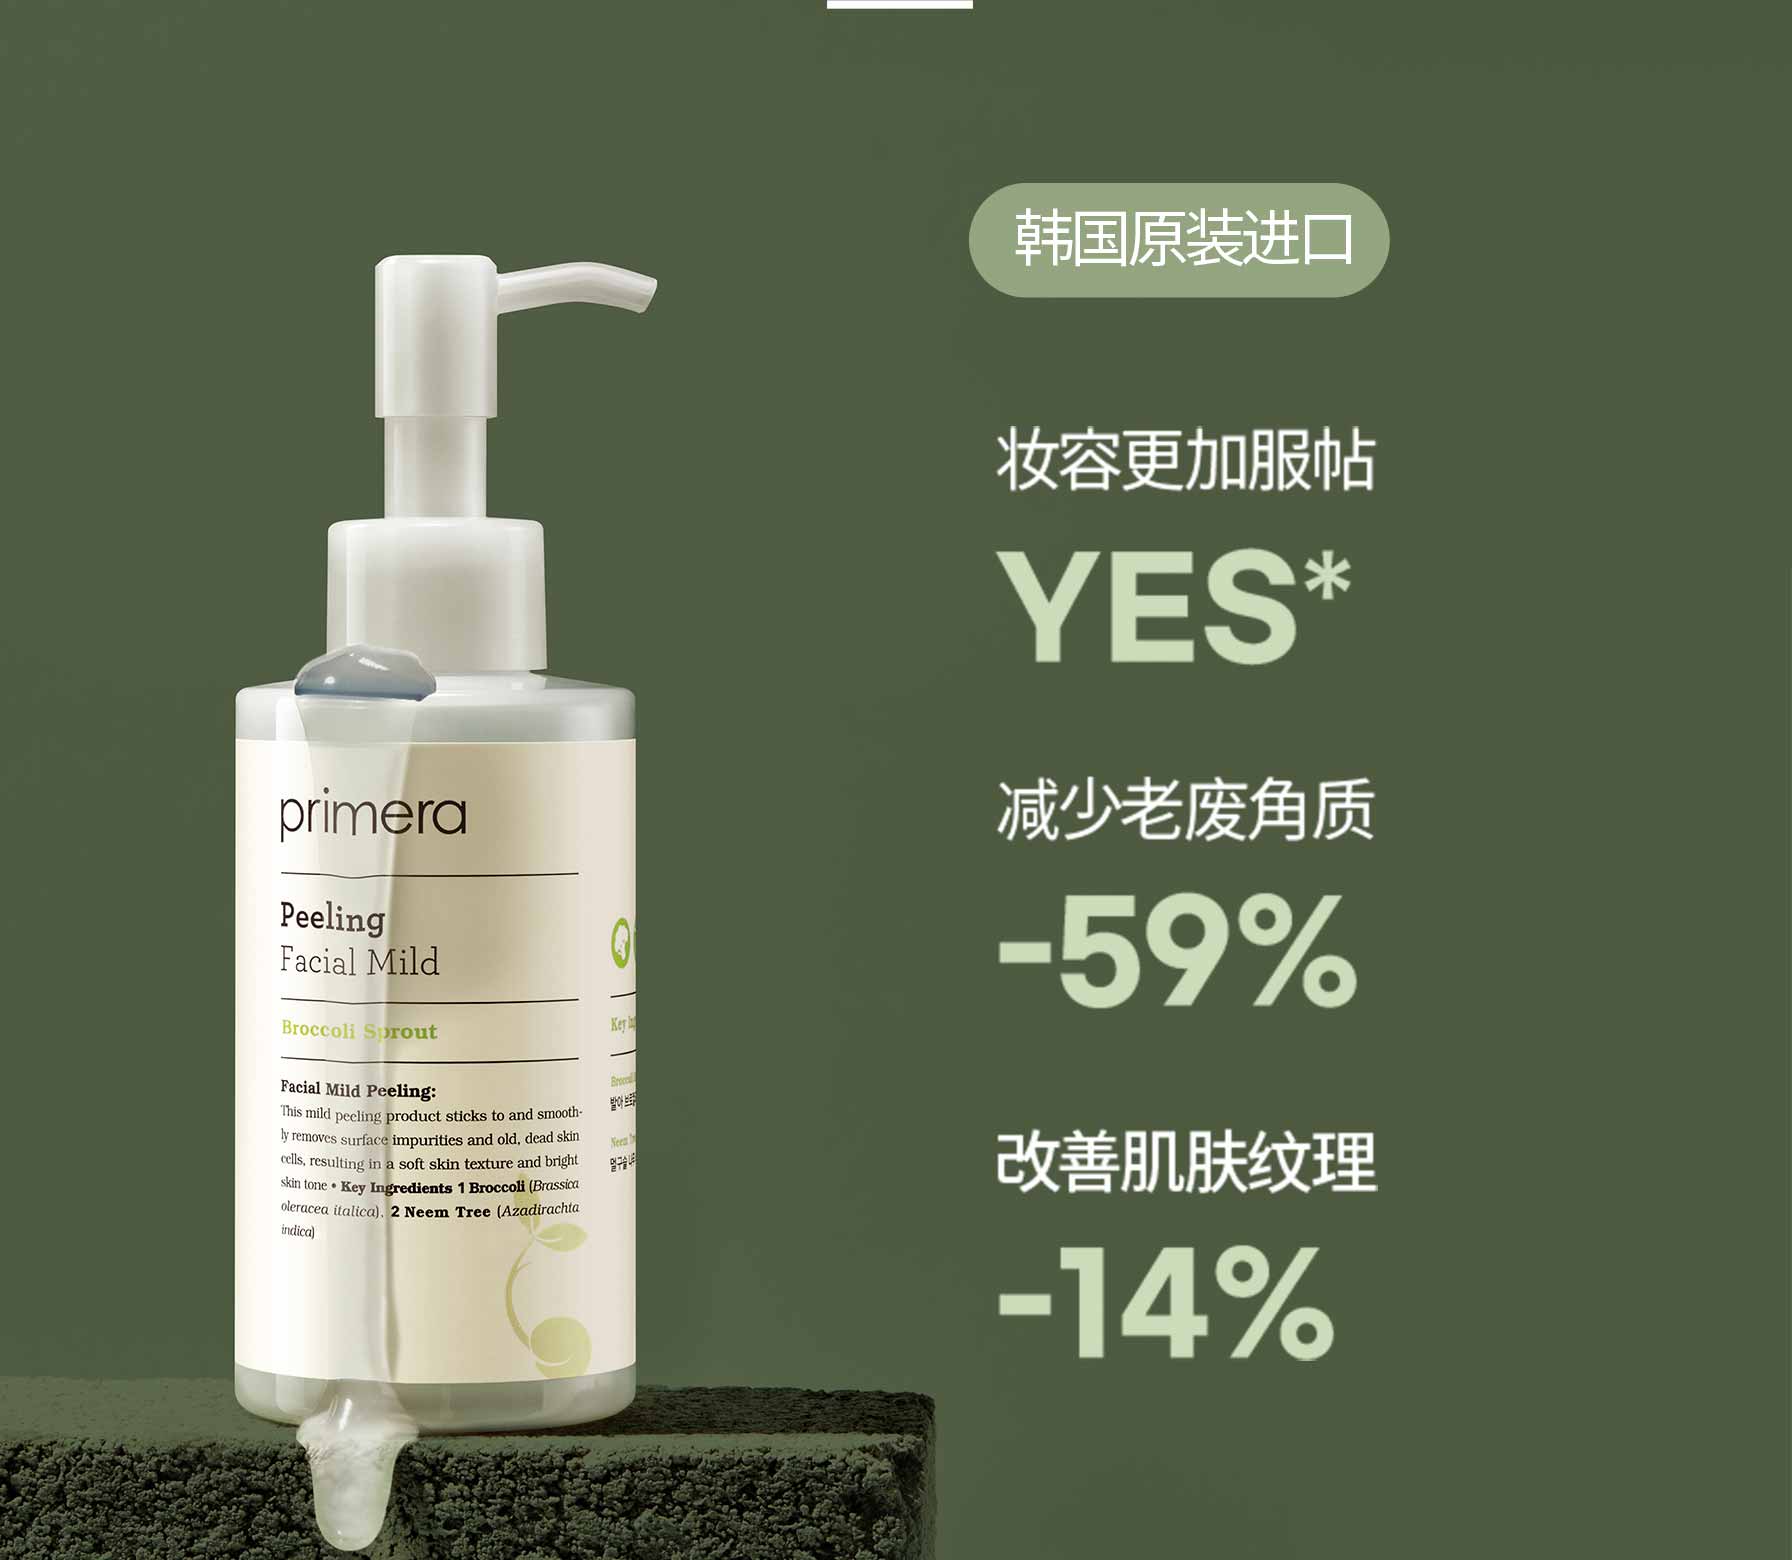 韩国原装进口 / 妆容更加服帖 : YES*, 减少老废角质 : -59%, 改善肌肤纹理 : -14%